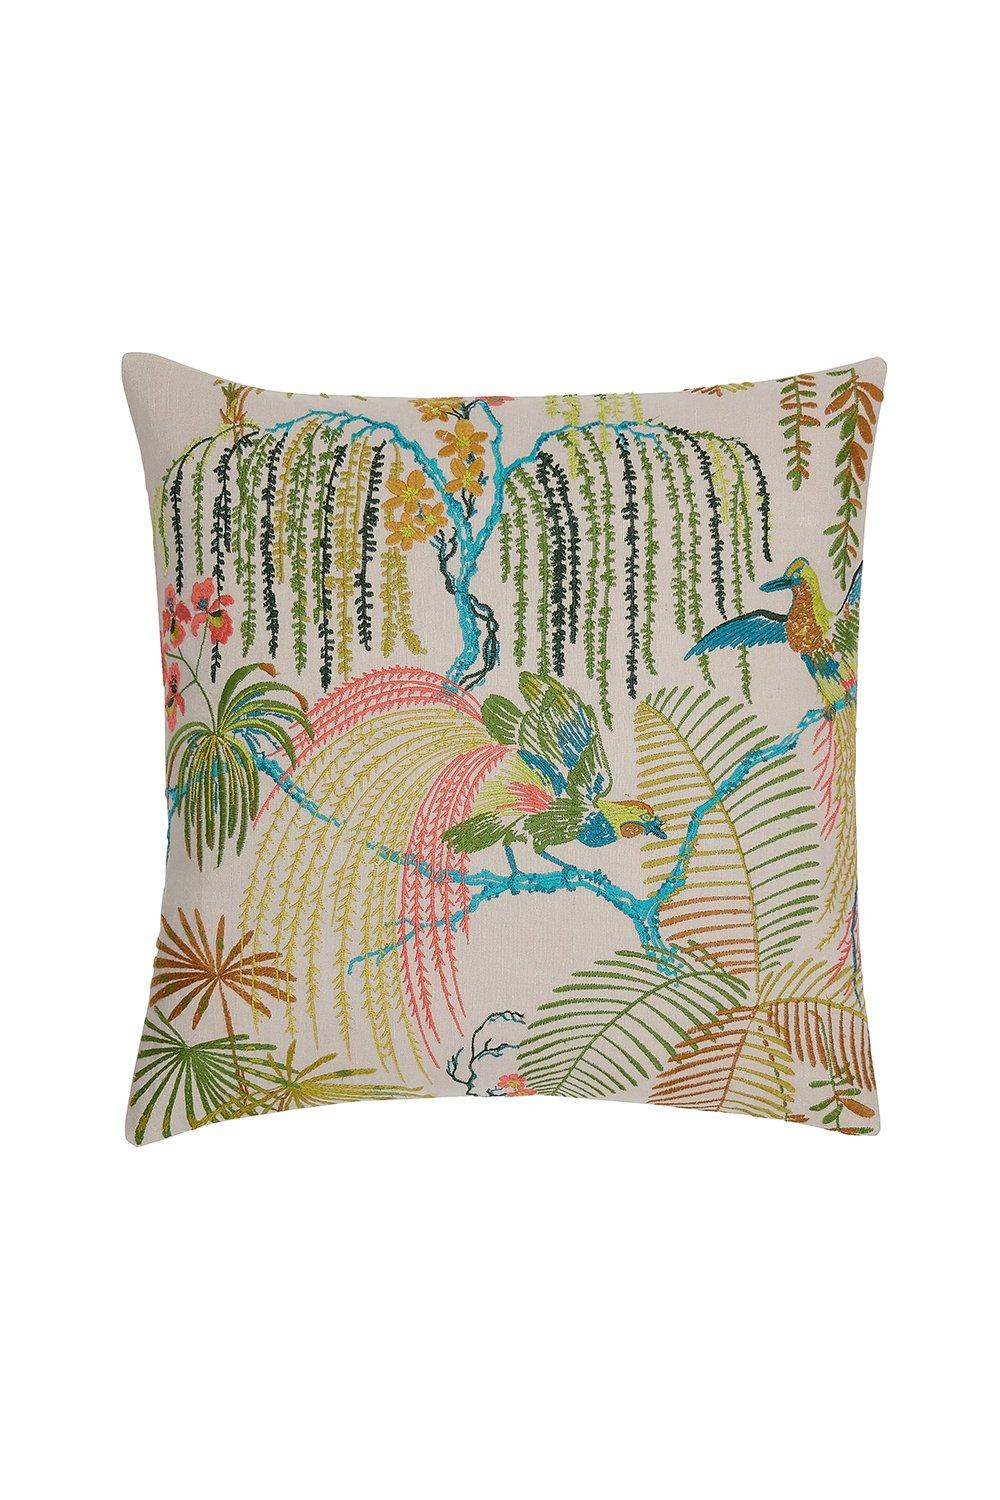 'Palm House Cushion' 45X45cm